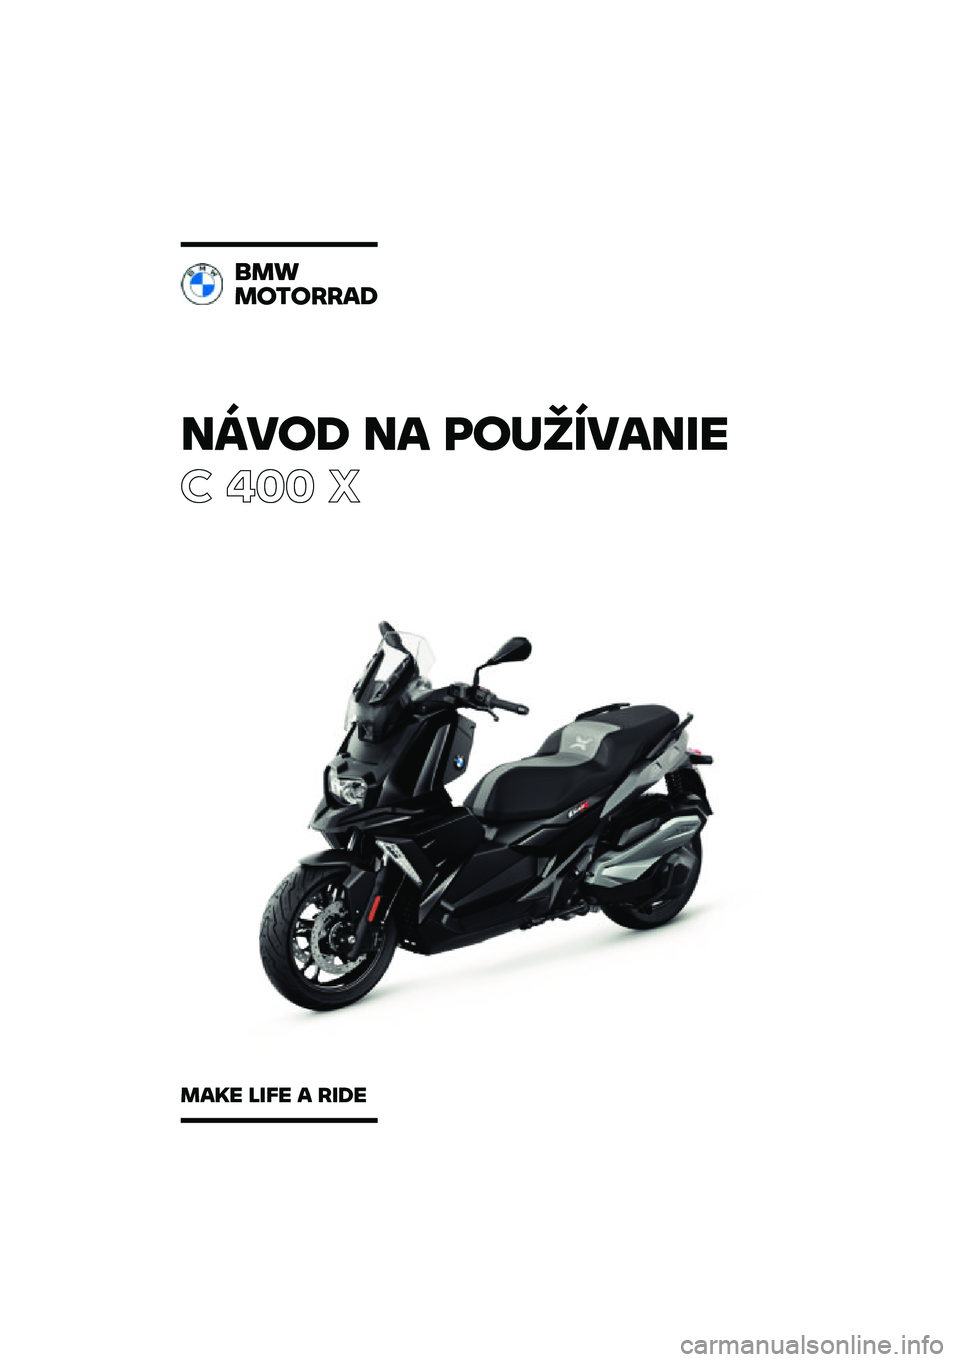 BMW MOTORRAD C 400 X 2021  Návod na používanie (in Slovak) �����\b �� �	��
�������
� ��� �
���
��������\b
���� ���� � ���\b� 